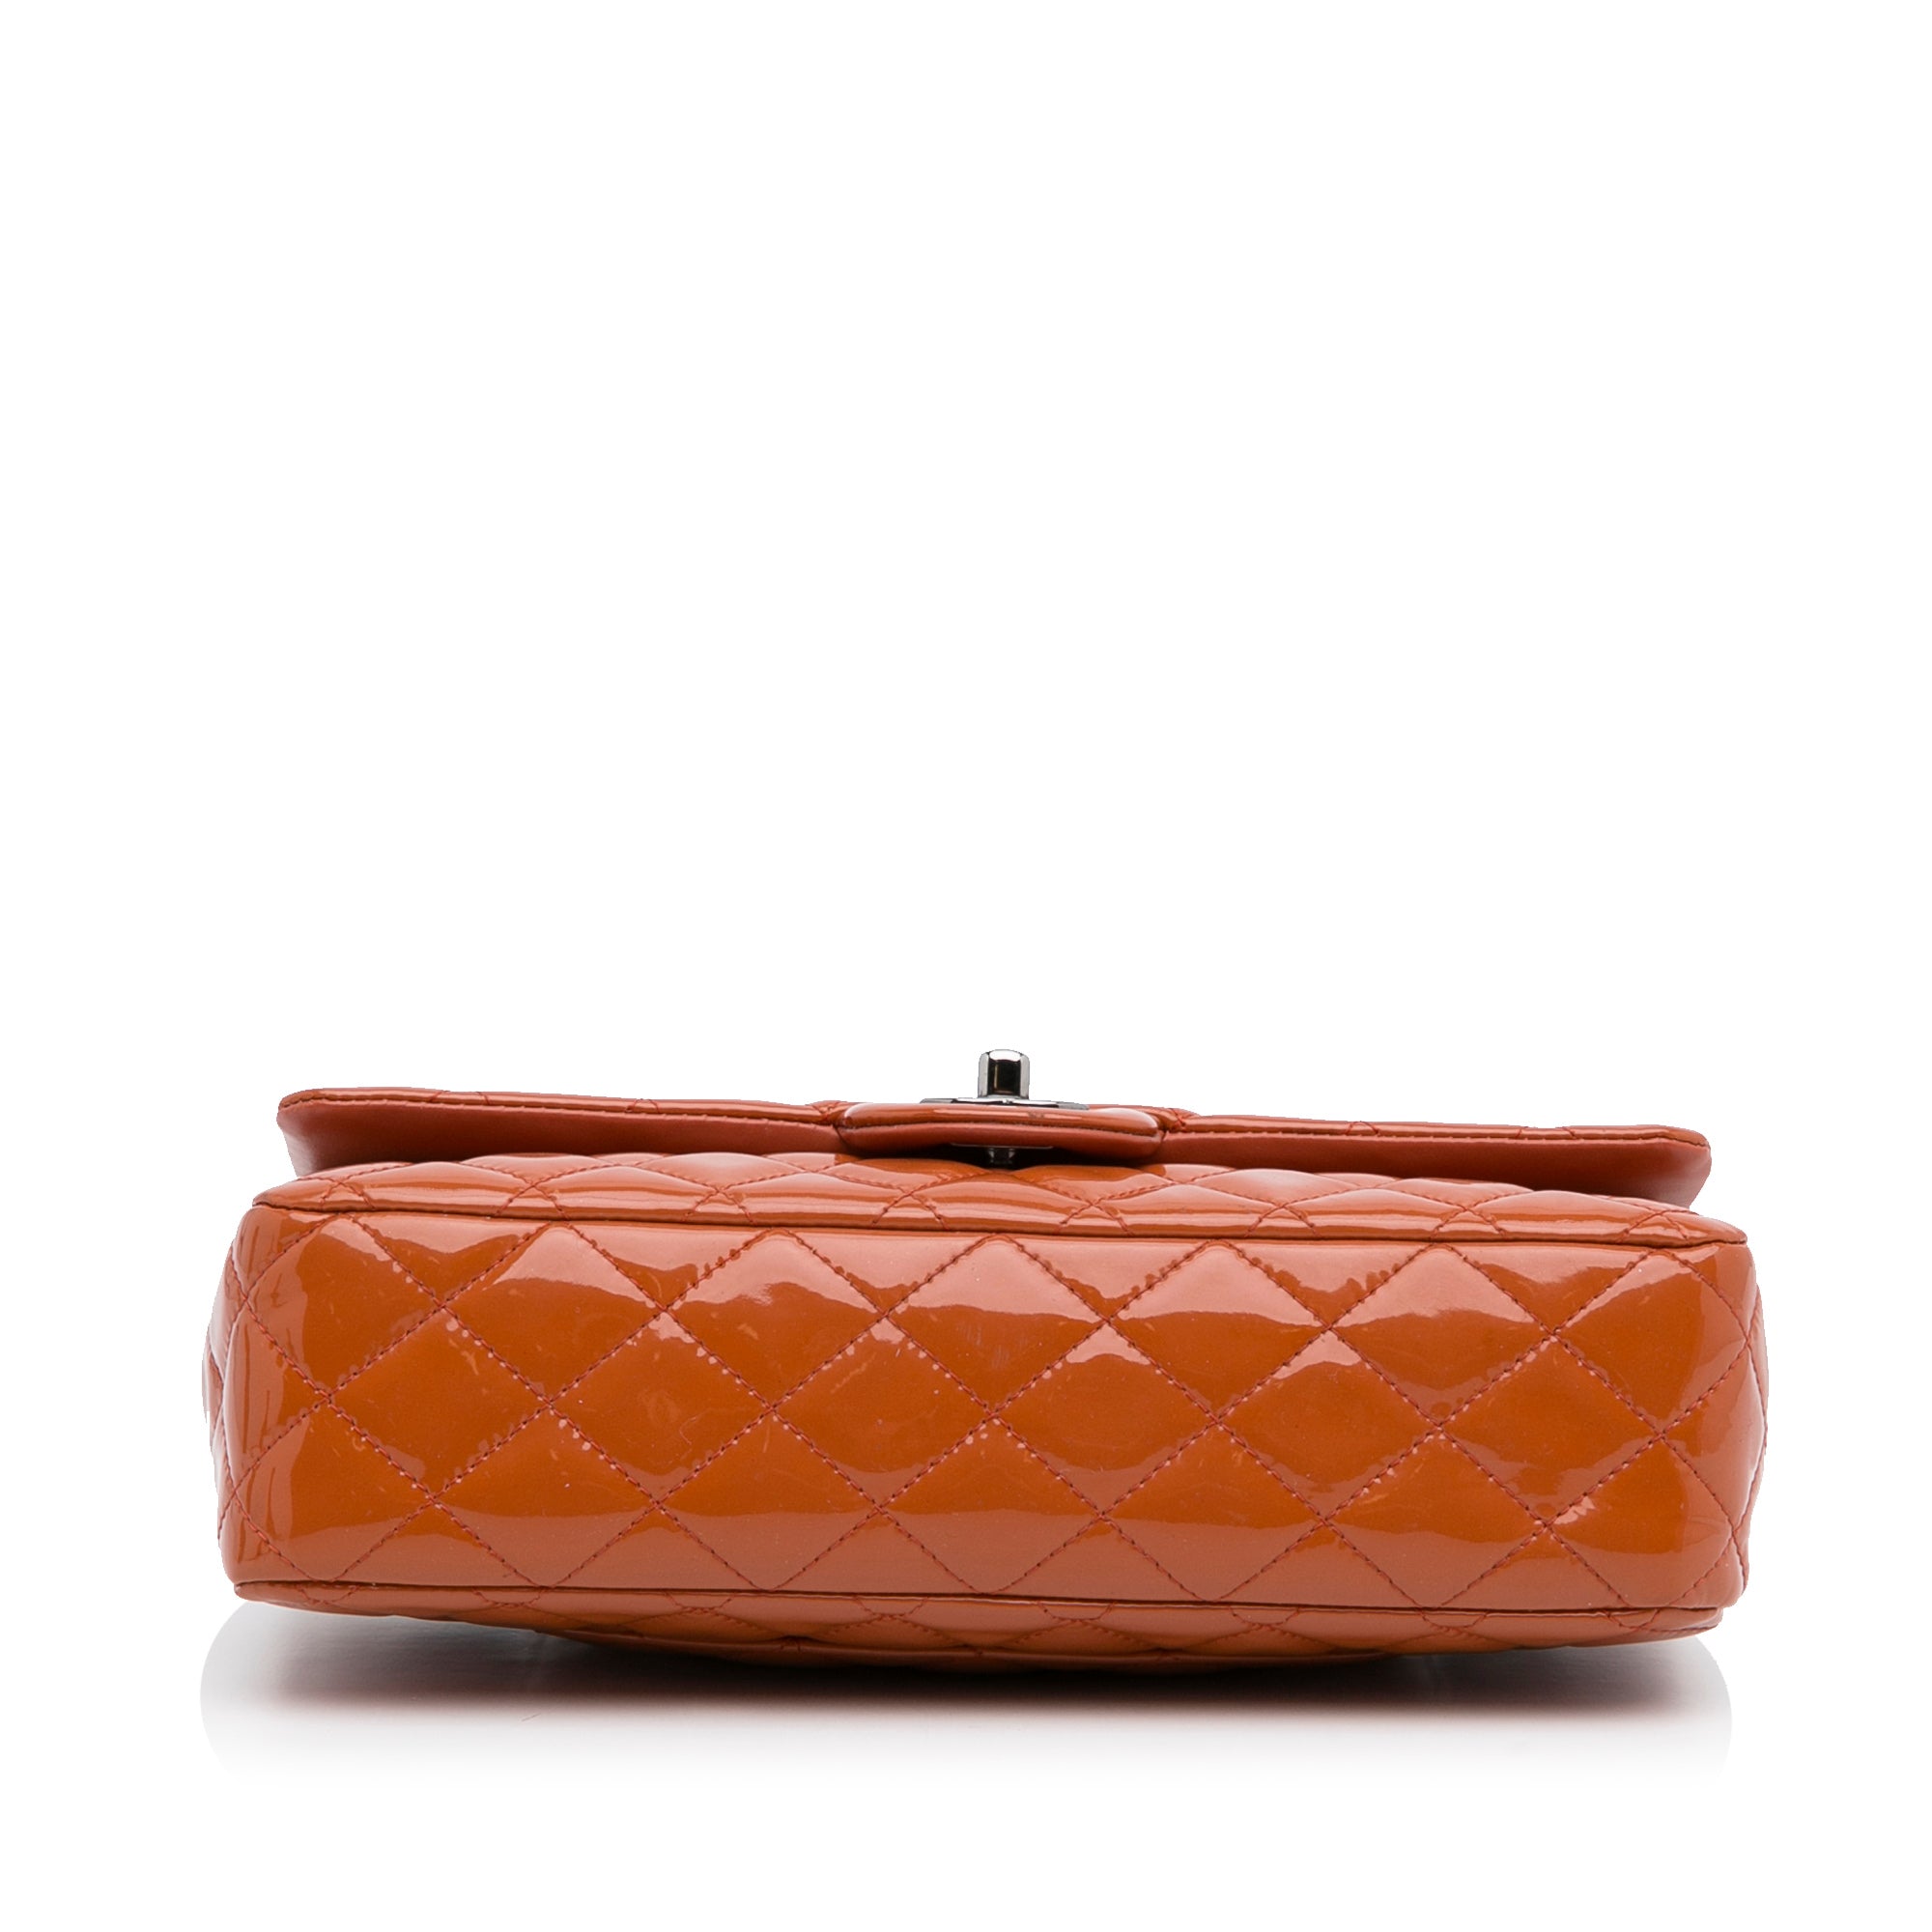 Orange Chanel Medium Classic Patent Double Flap Shoulder Bag